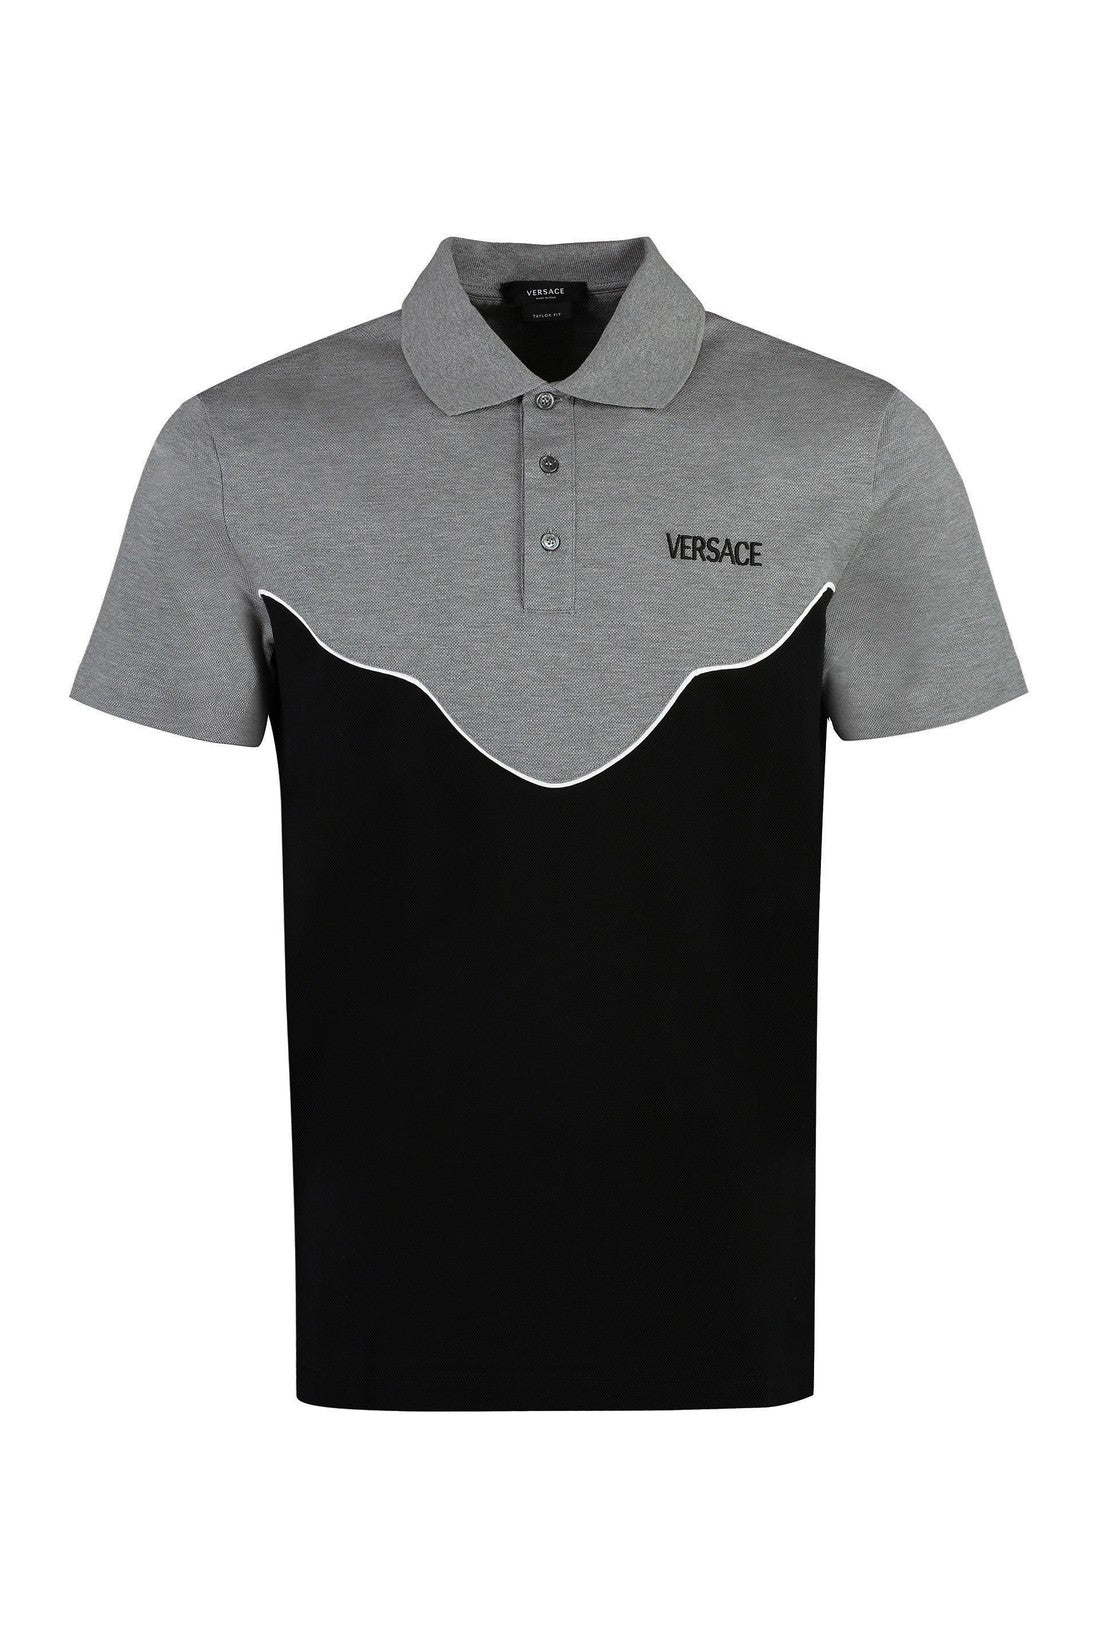 Versace-OUTLET-SALE-Cotton-piqué polo shirt-ARCHIVIST